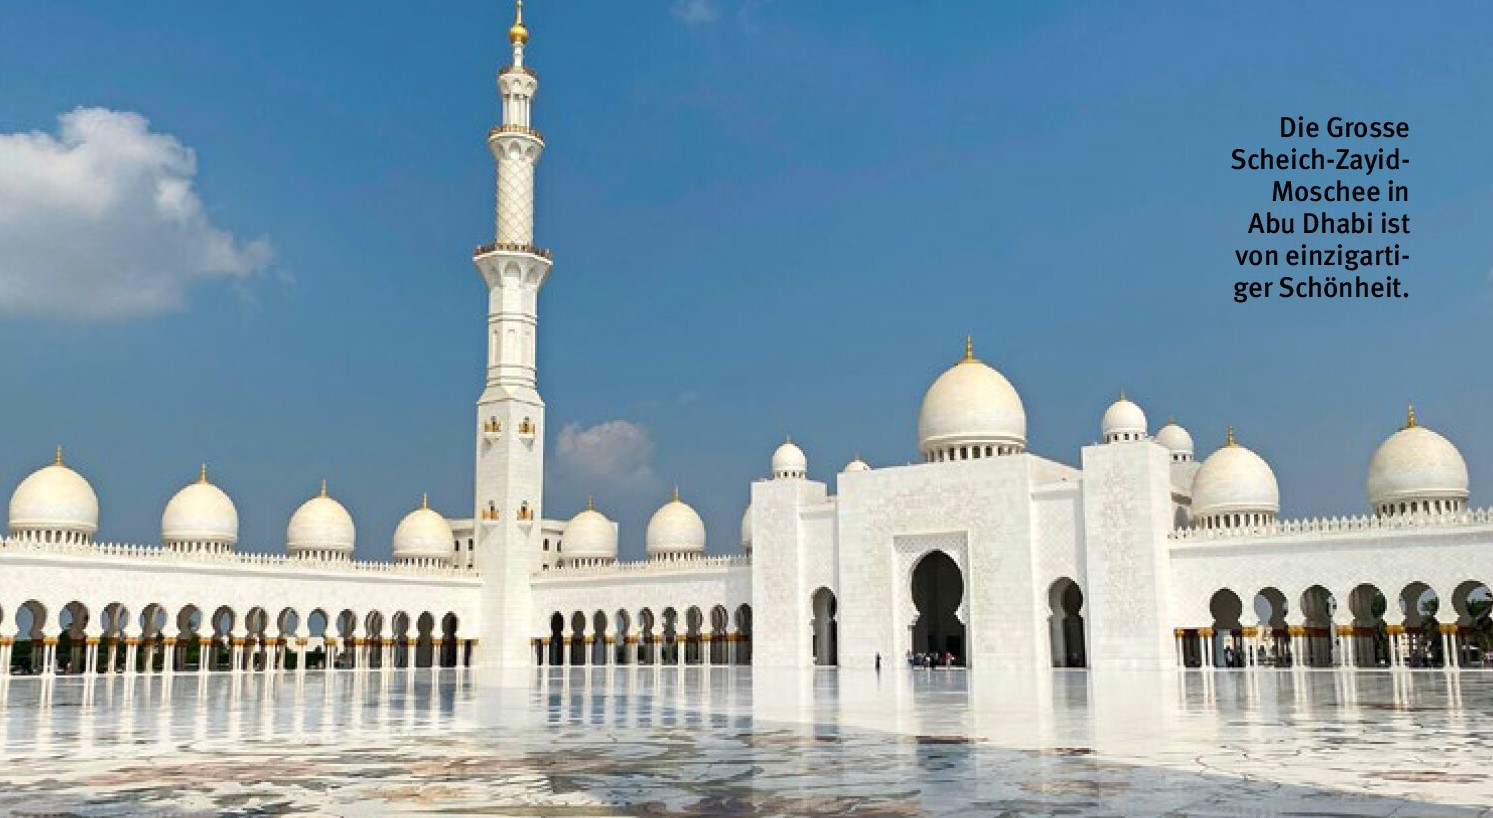 Die Große Scheich-Zayid-Moschee